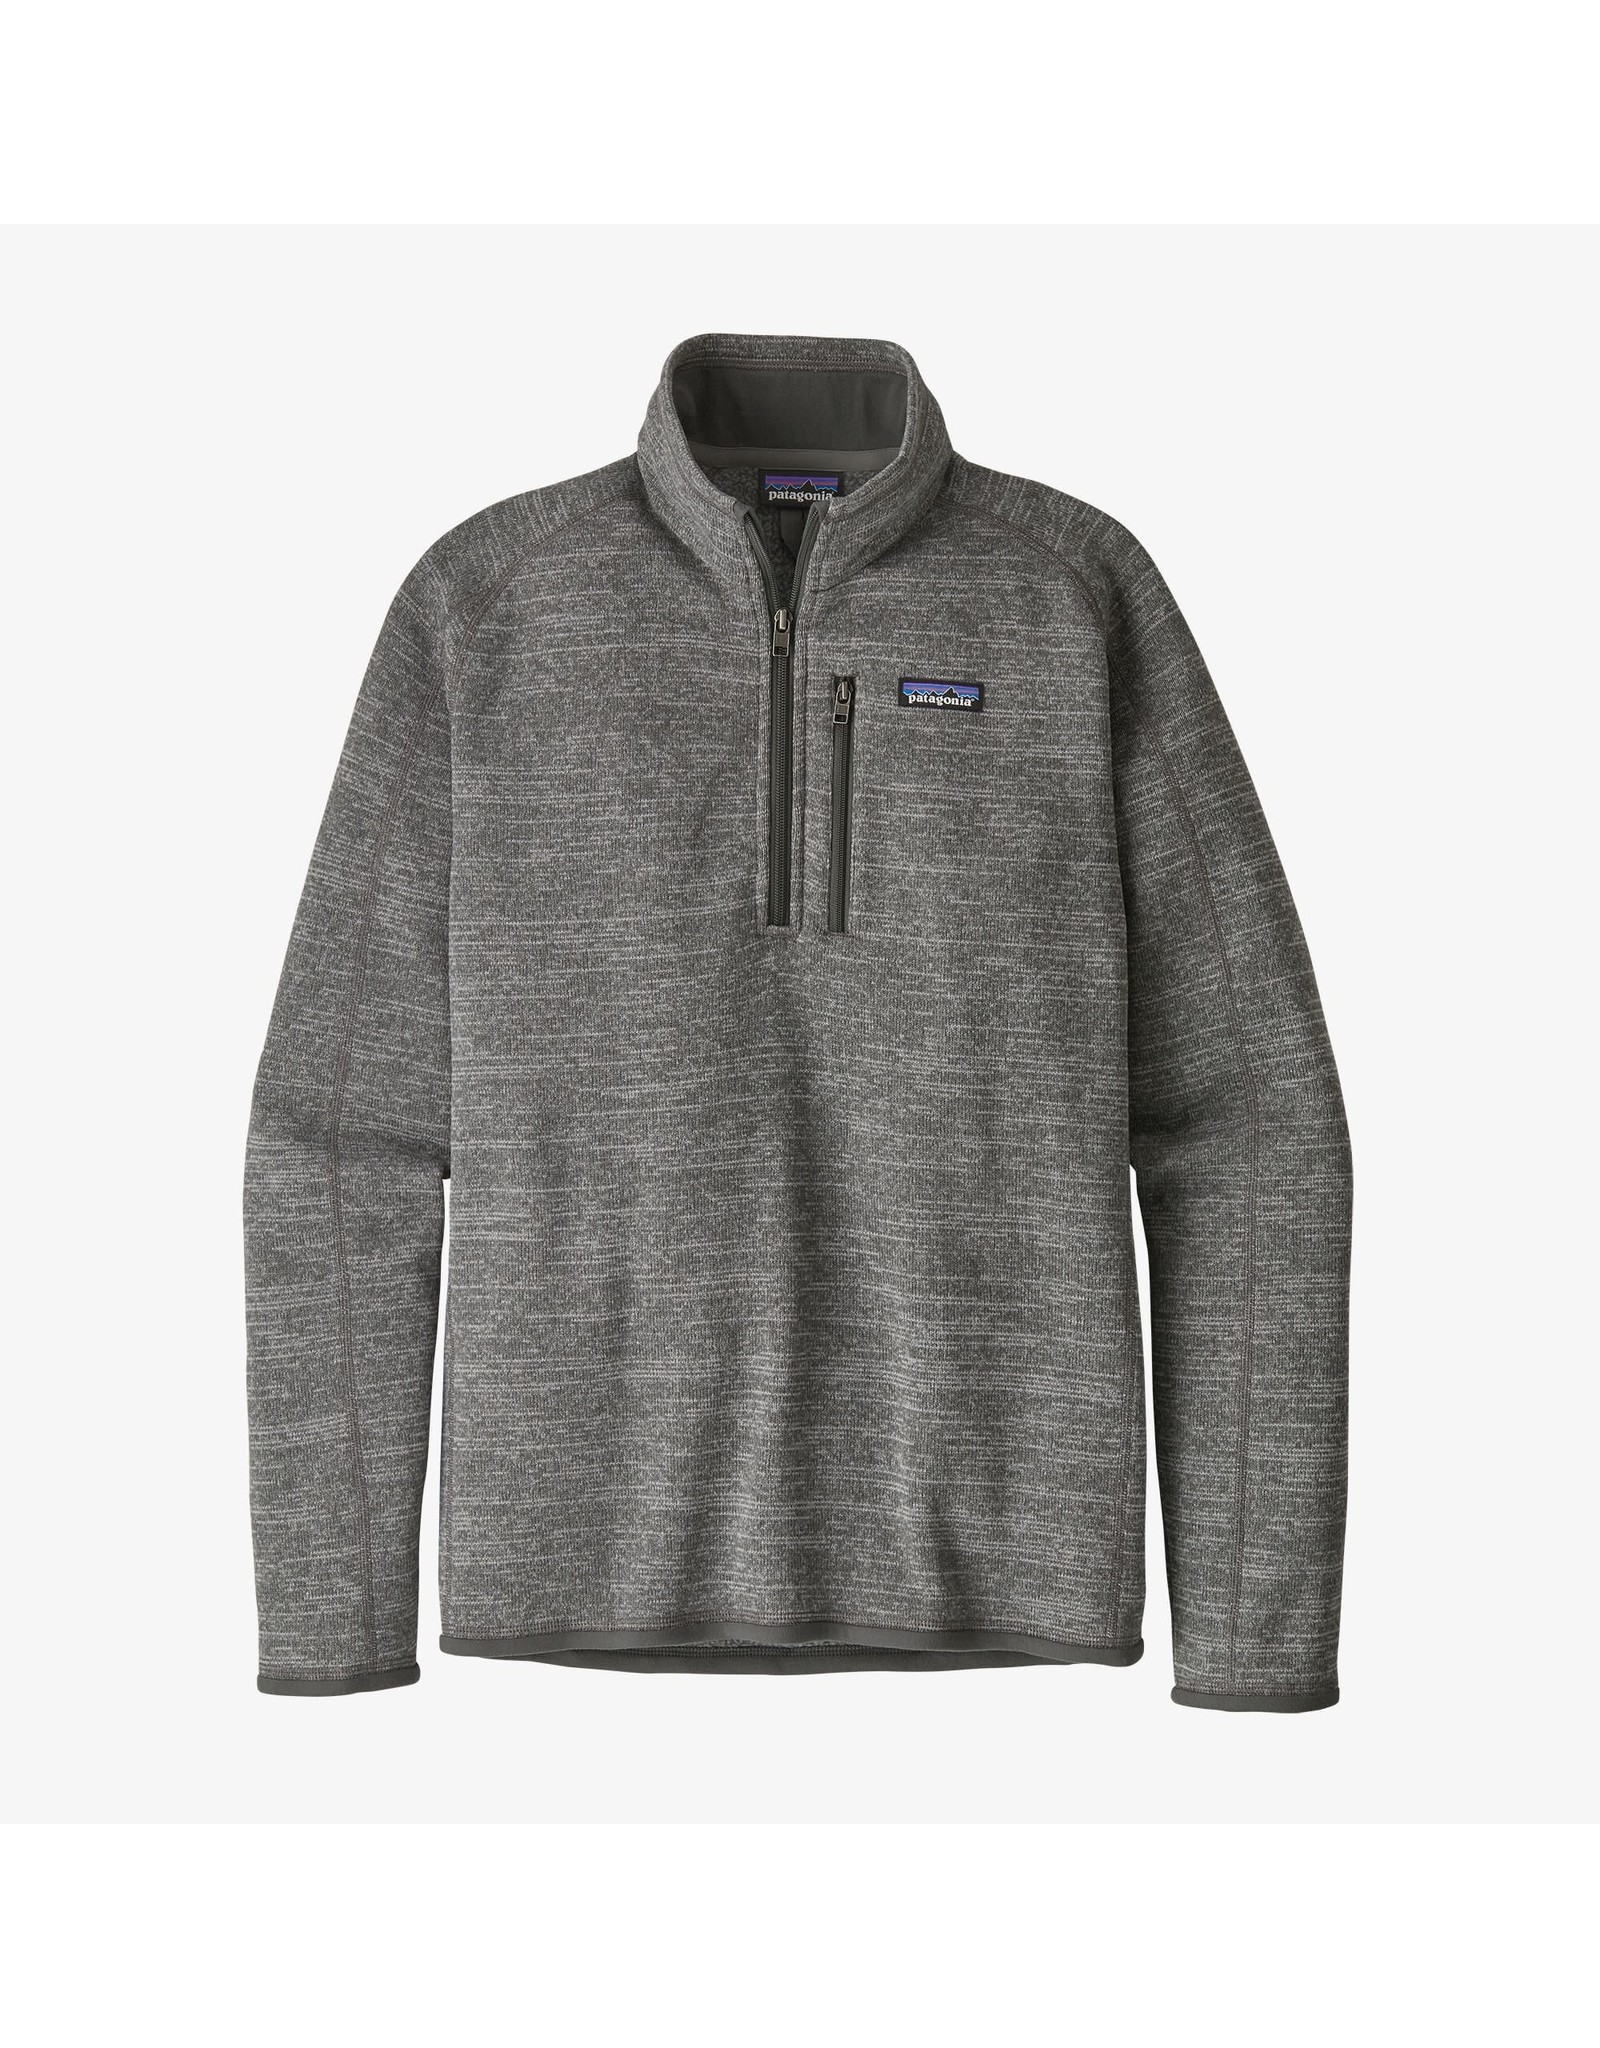 Patagonia Men's Better Sweater 1/4 Zip Nickel